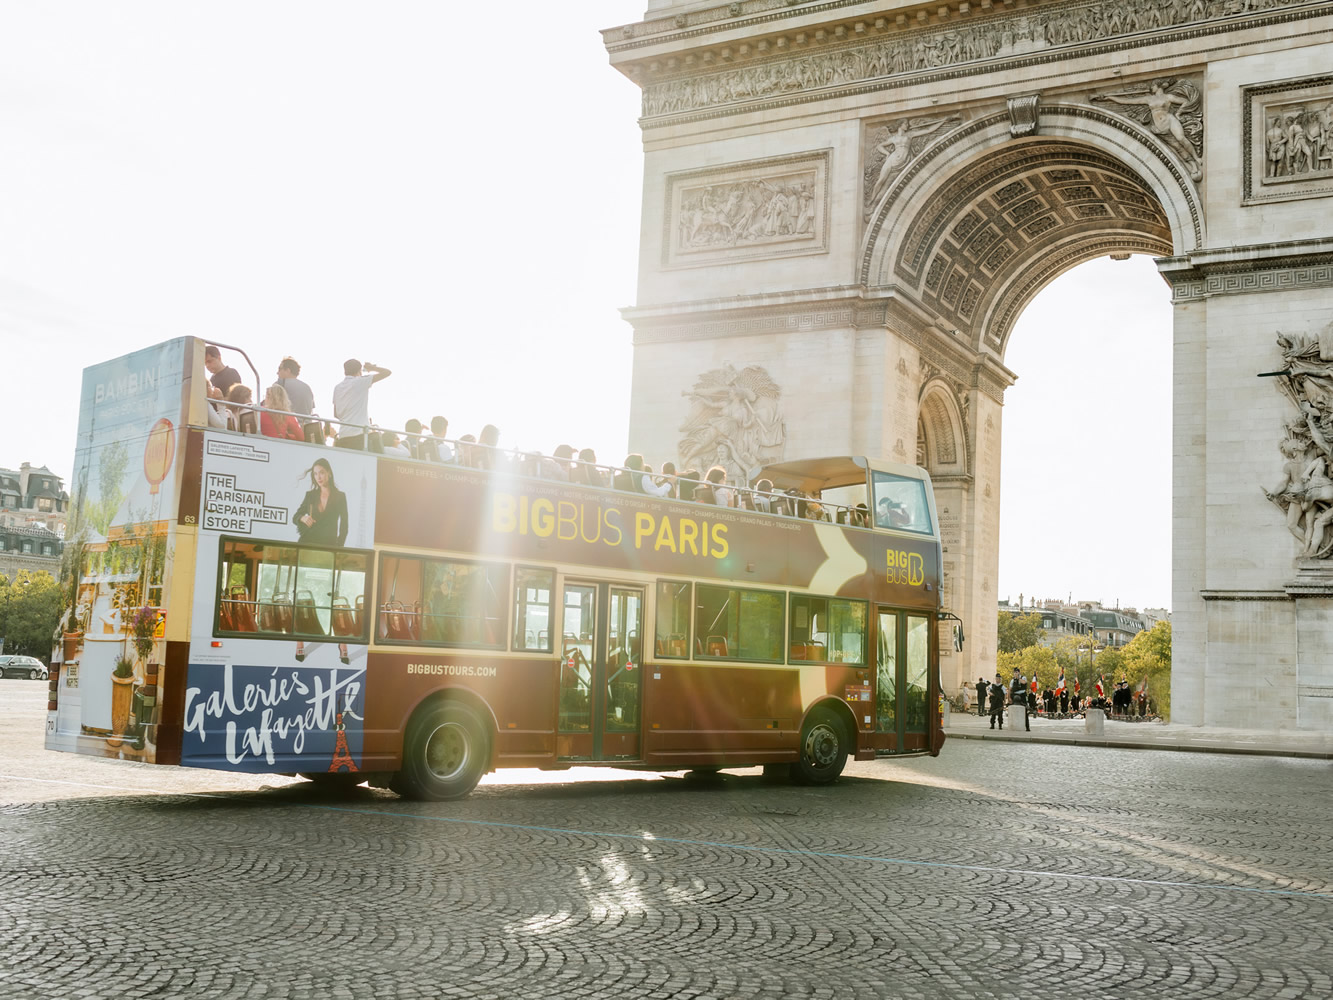 Hop on hop off bus Paris route